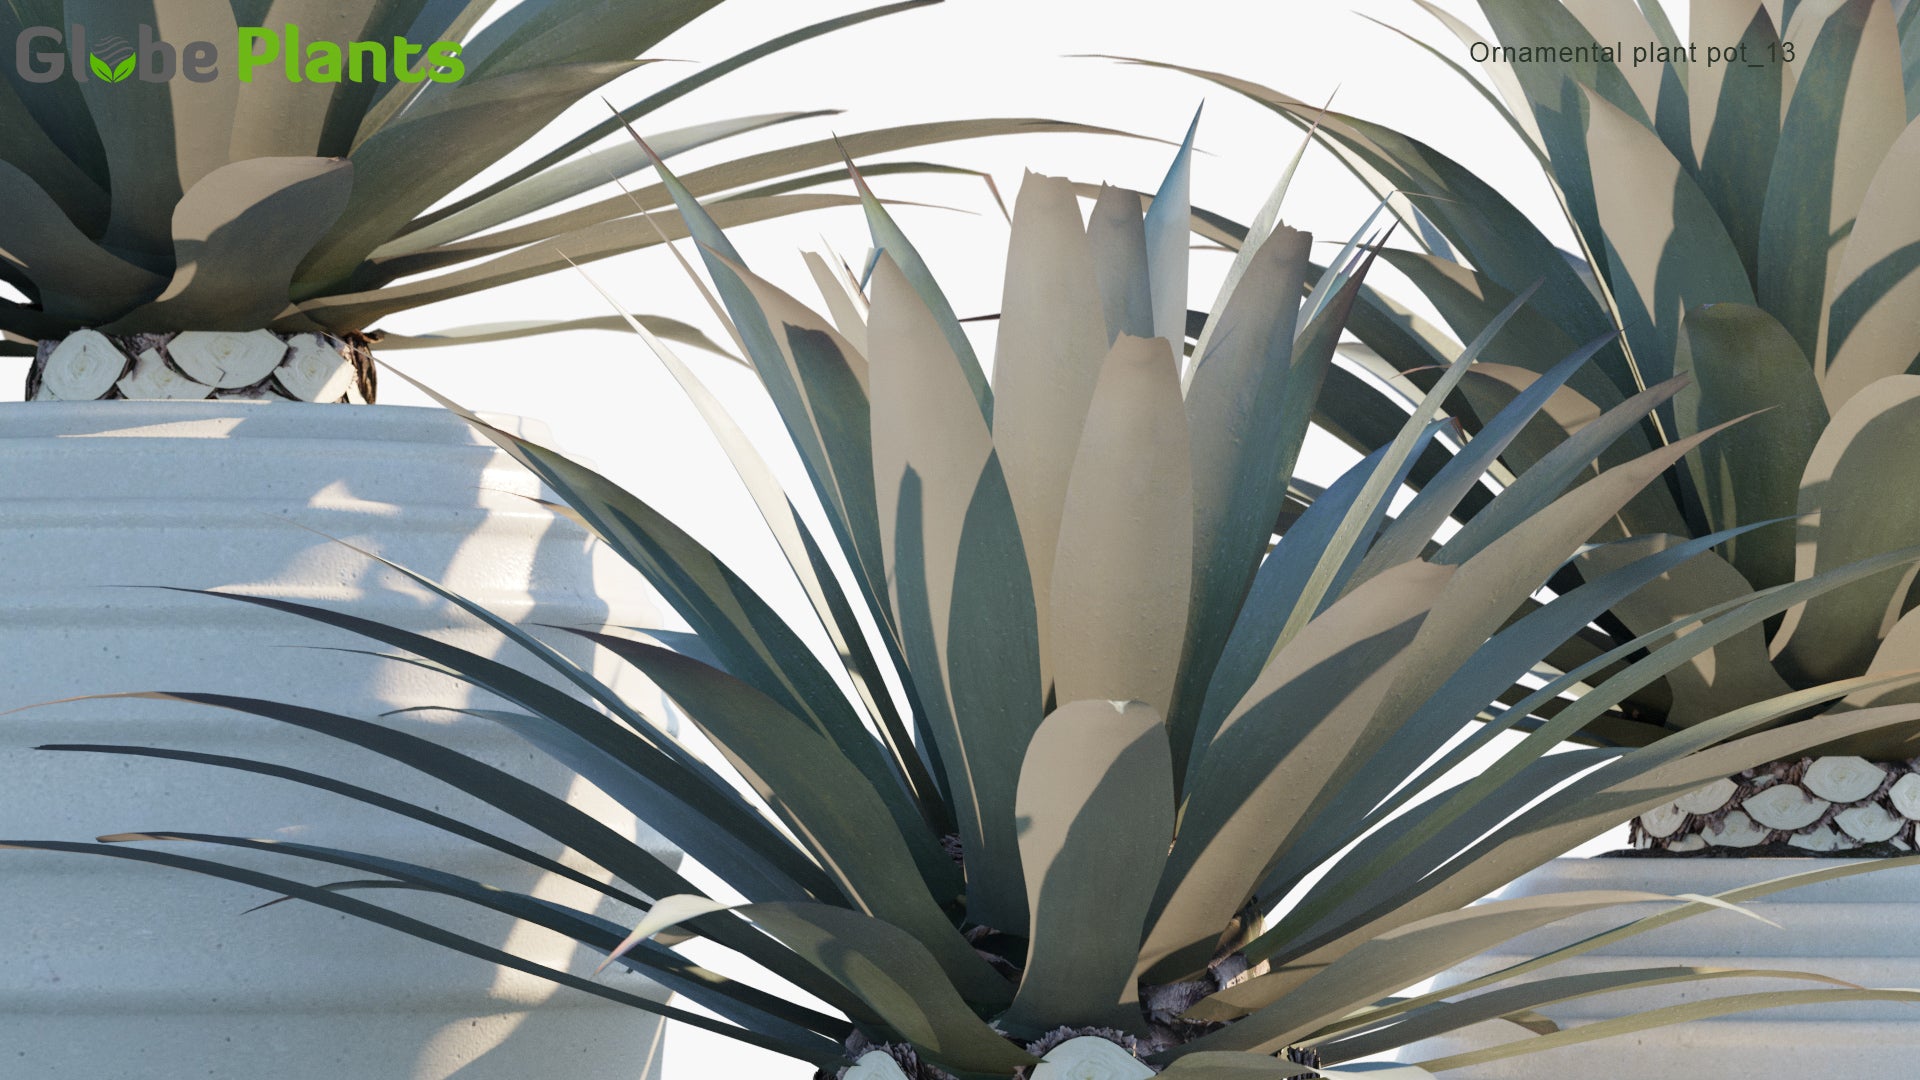 Ornamental Pot Plant 13 - Agave Tequilana (3D Model)